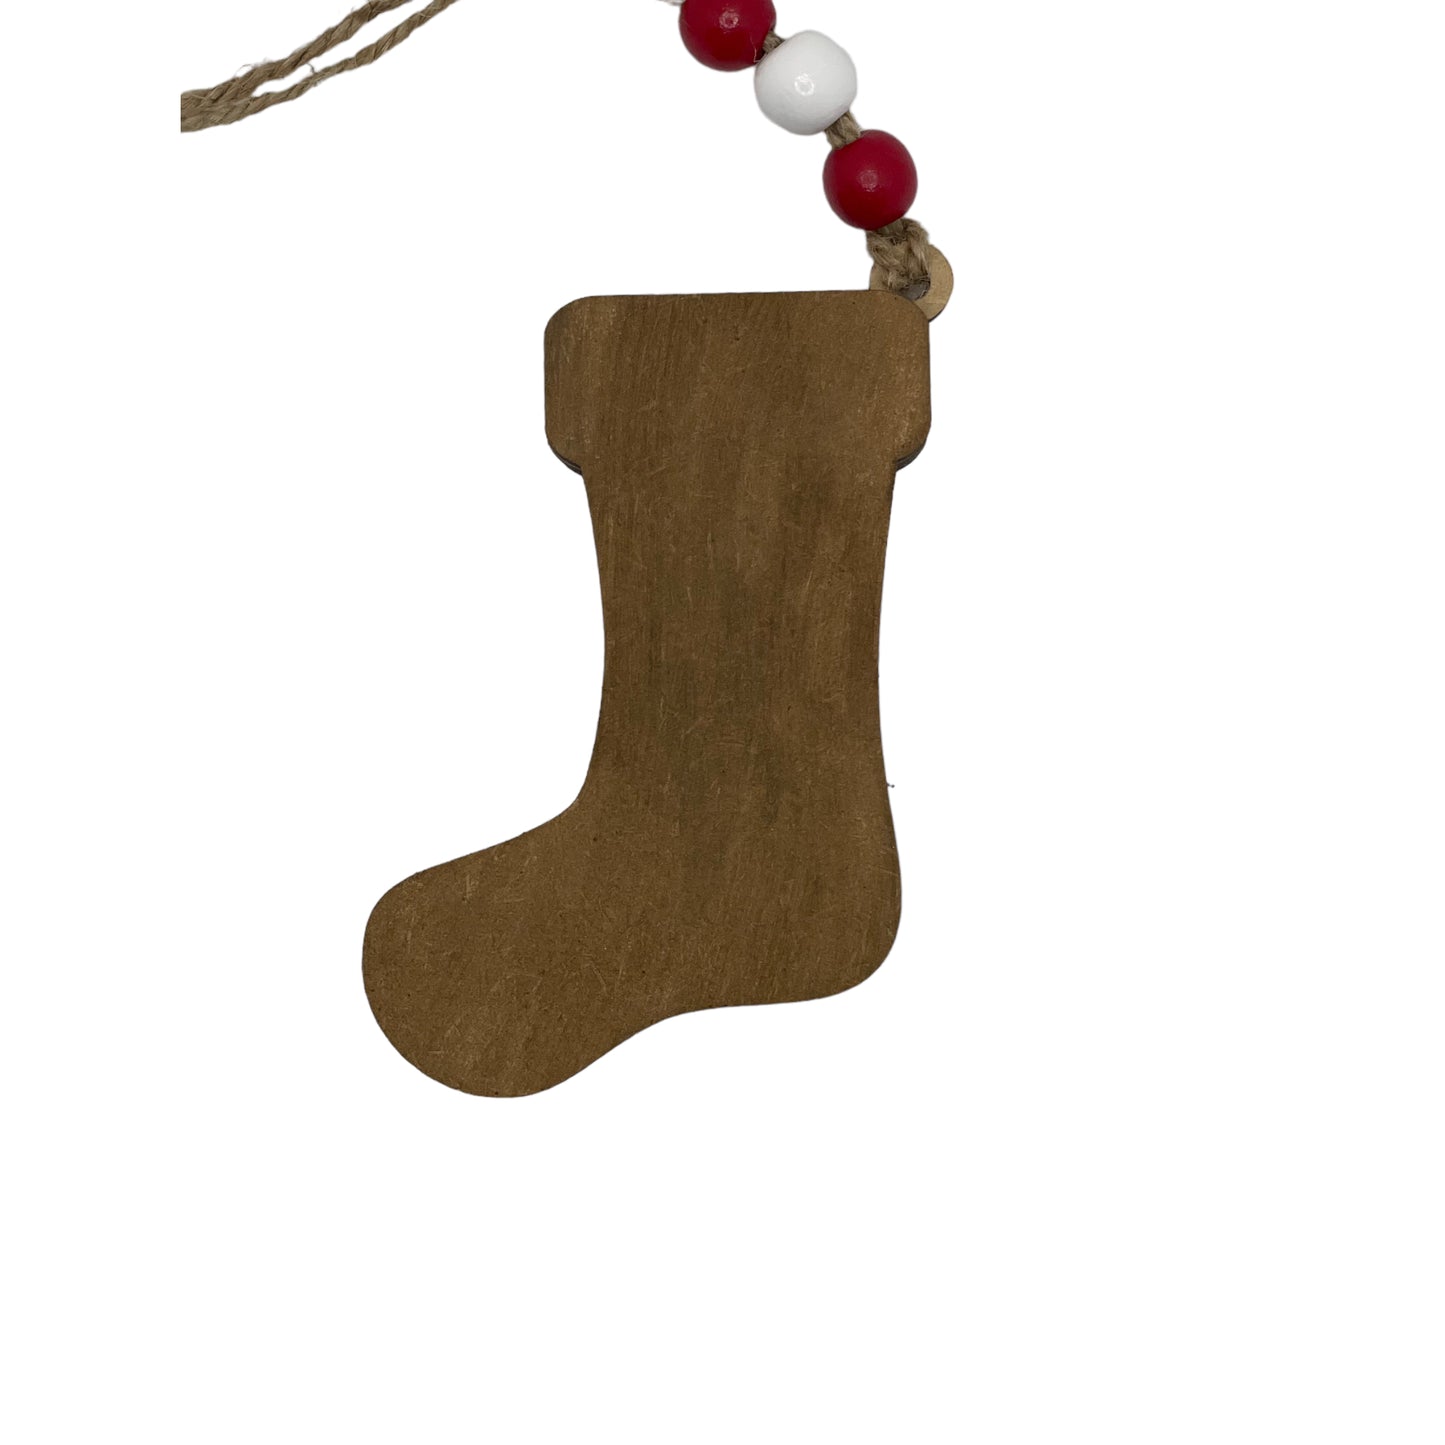 Christmas Ornament - Red Stocking Sock - Money/Gift Card Holder